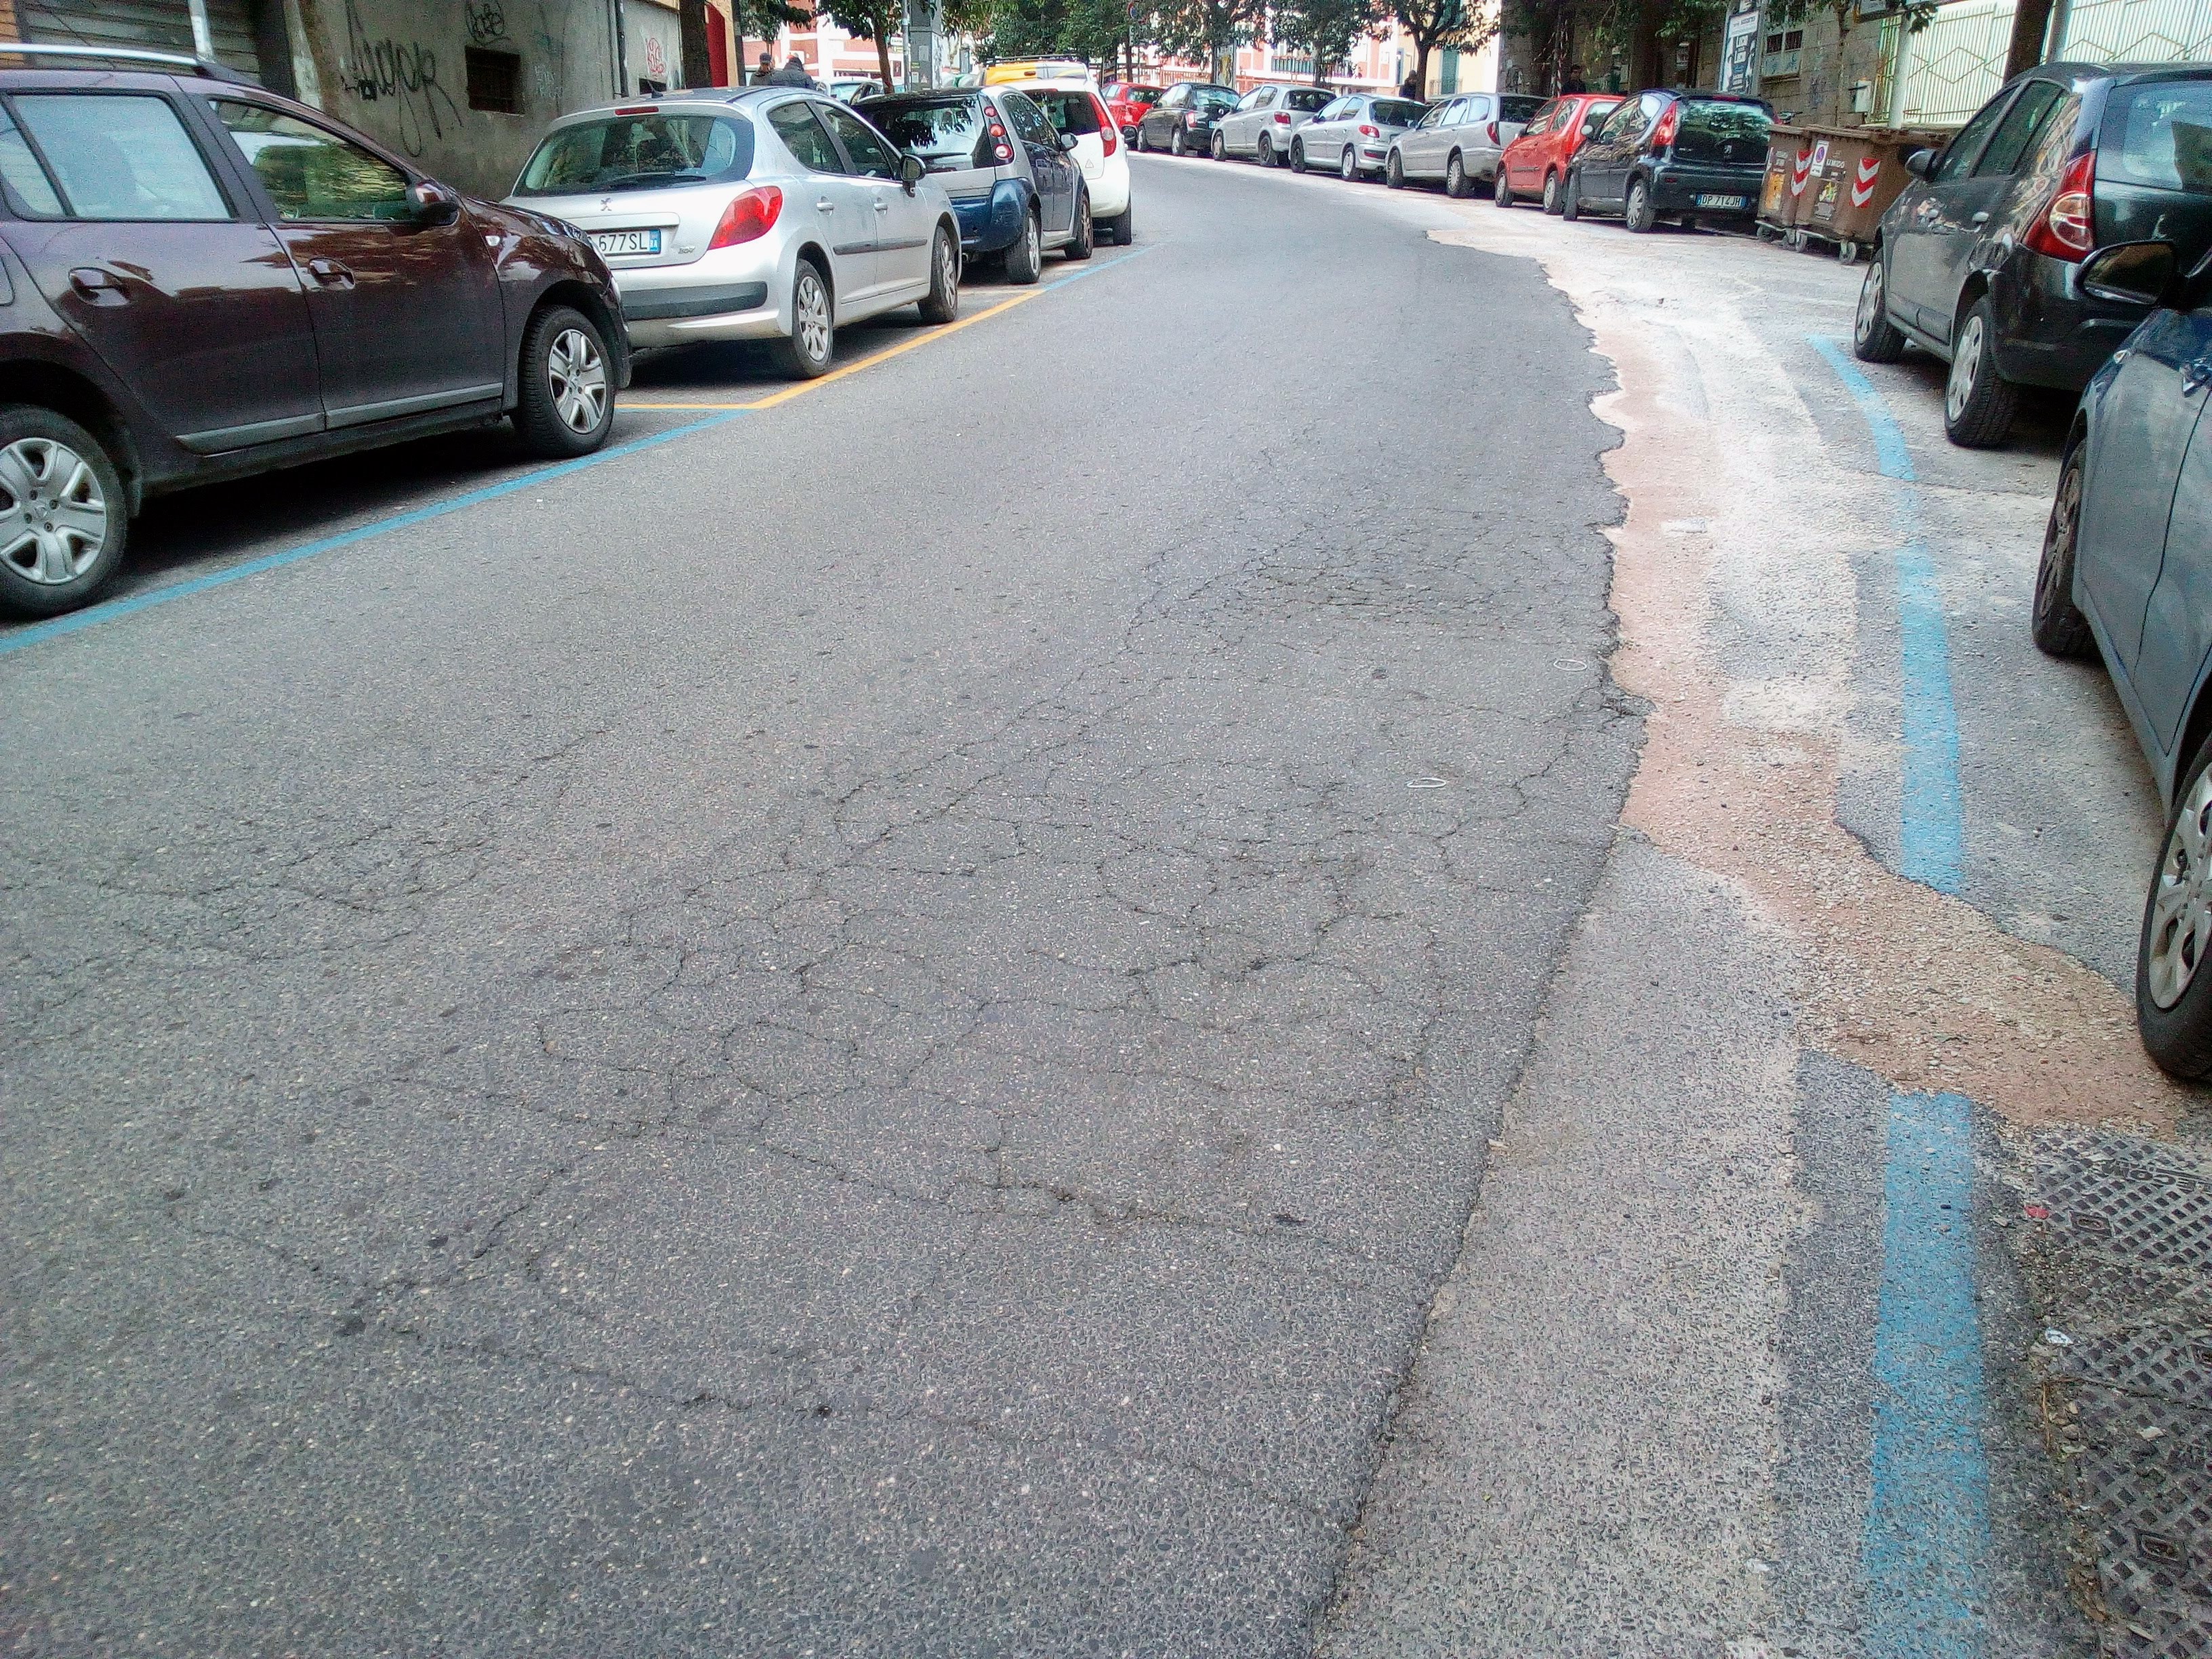 Via Orsi dopo i lavori: da strada in condizioni normali a strada dissestata. Ora a chi tocca ripristinare l'asfalto?